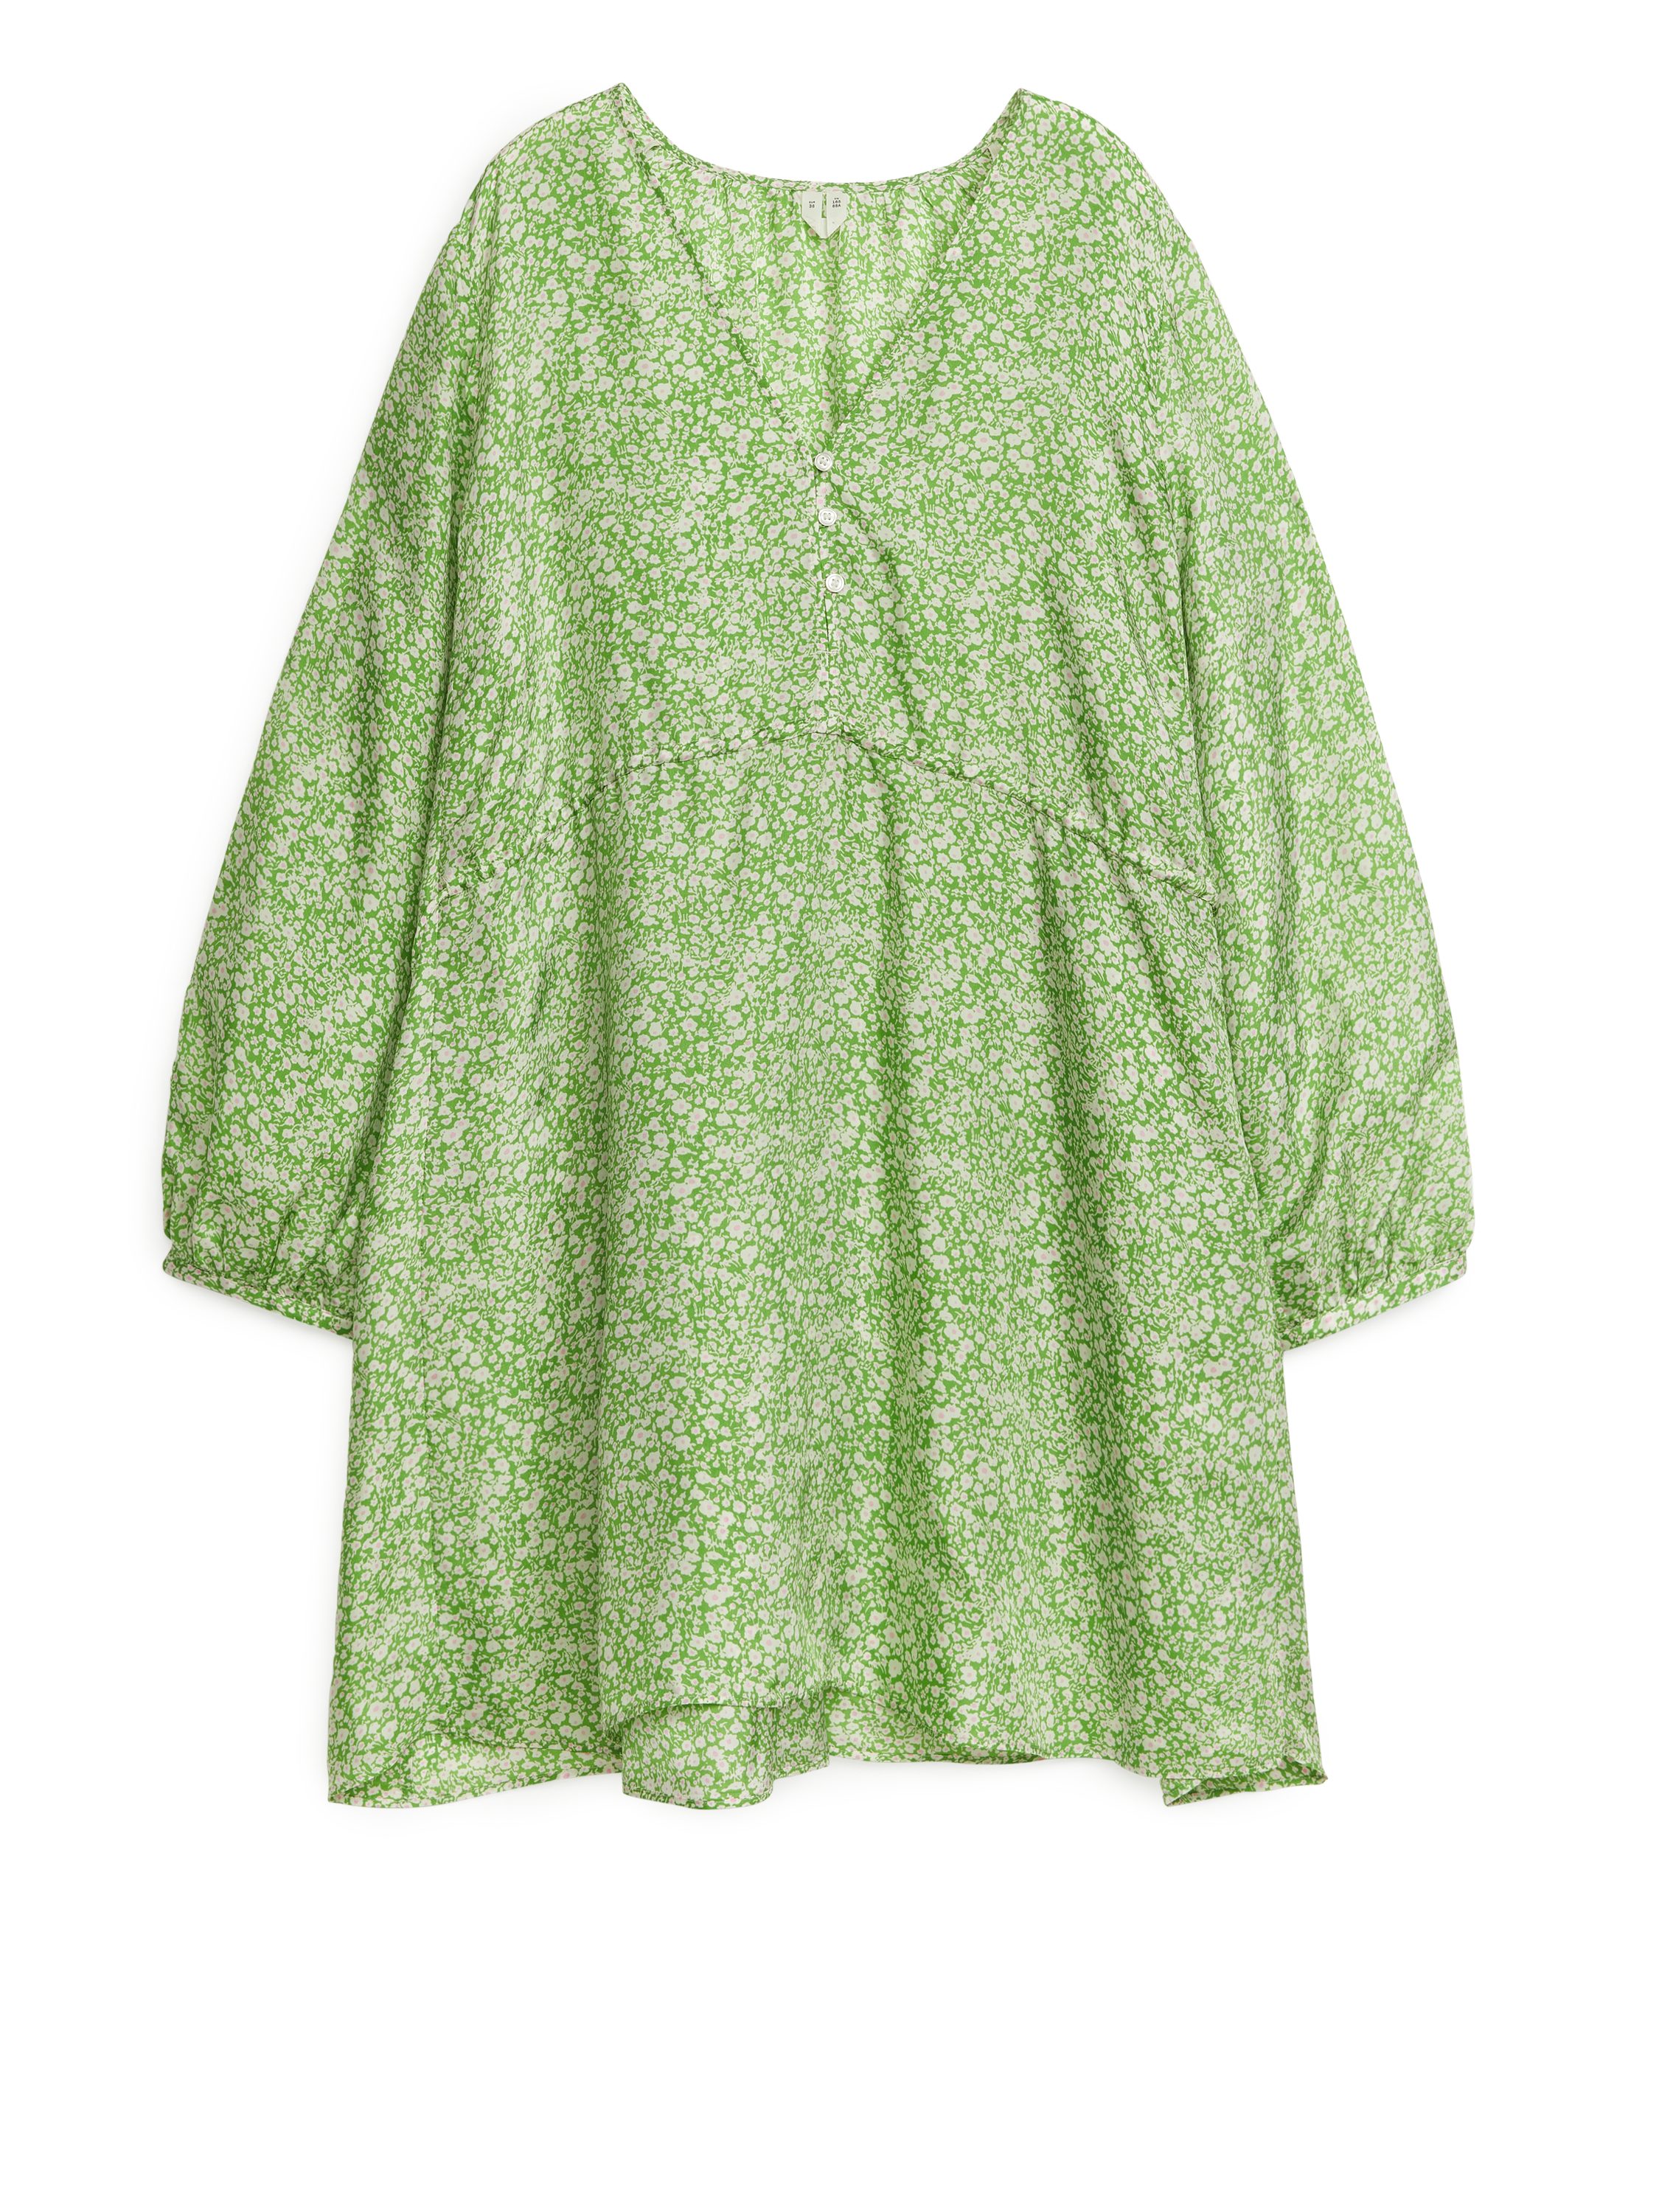 Billede af Arket A-formet Minikjole Grøn/hvid, Hverdagskjoler. Farve: Green/white I størrelse 36